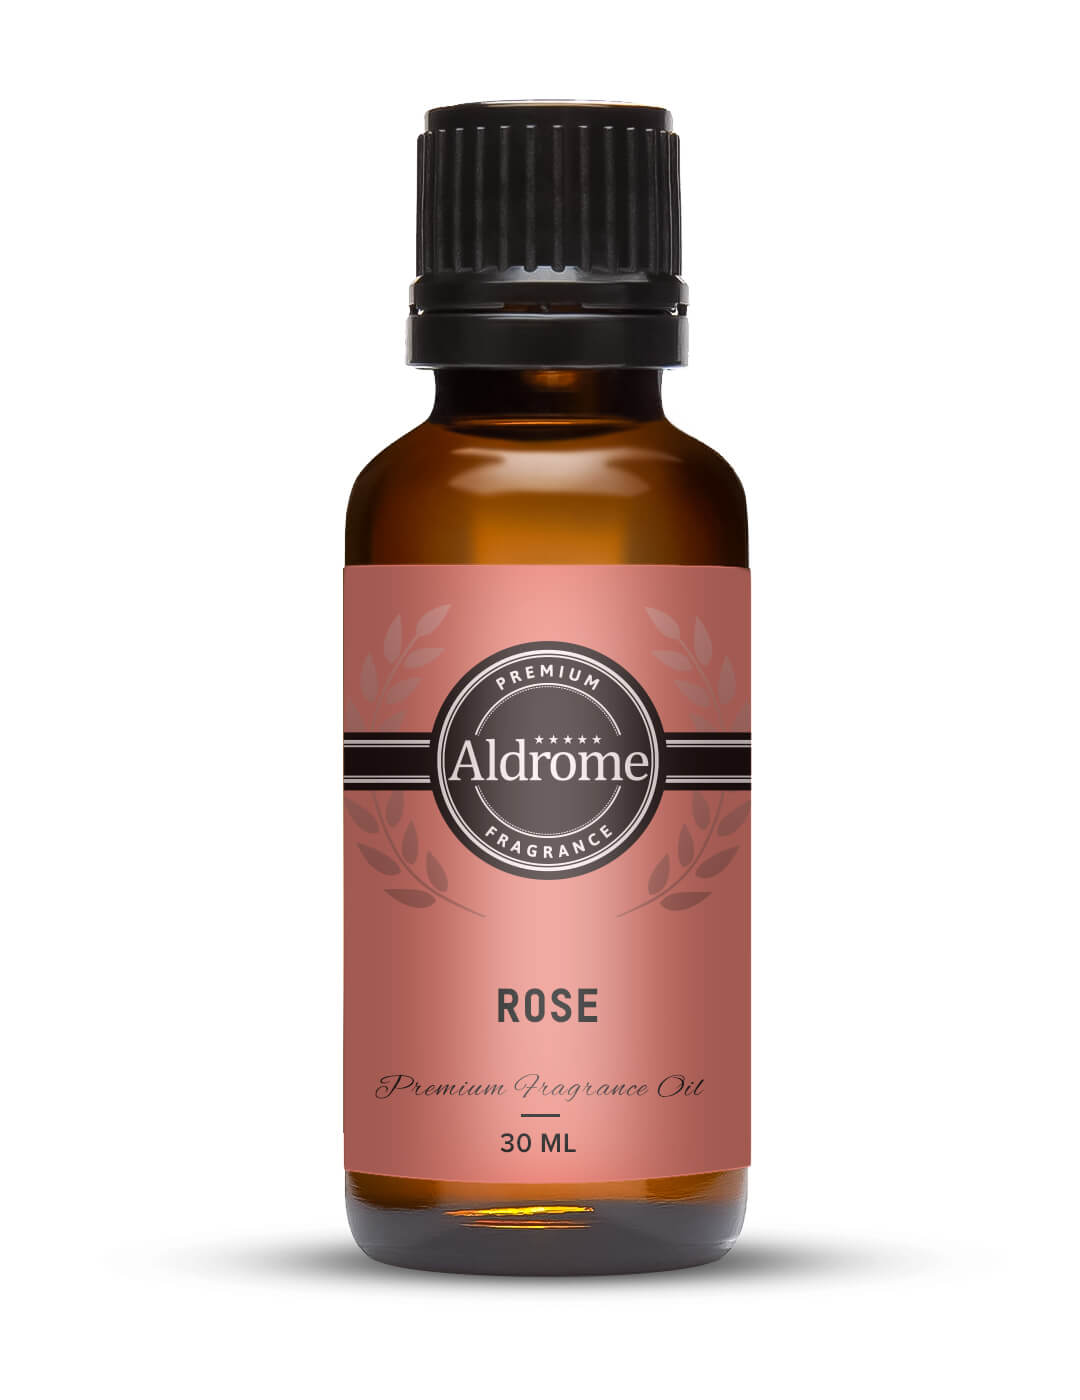 Buy Rose Fragrance Oil - 30ml at Best price | Aldrome Premium Fragrance Oil